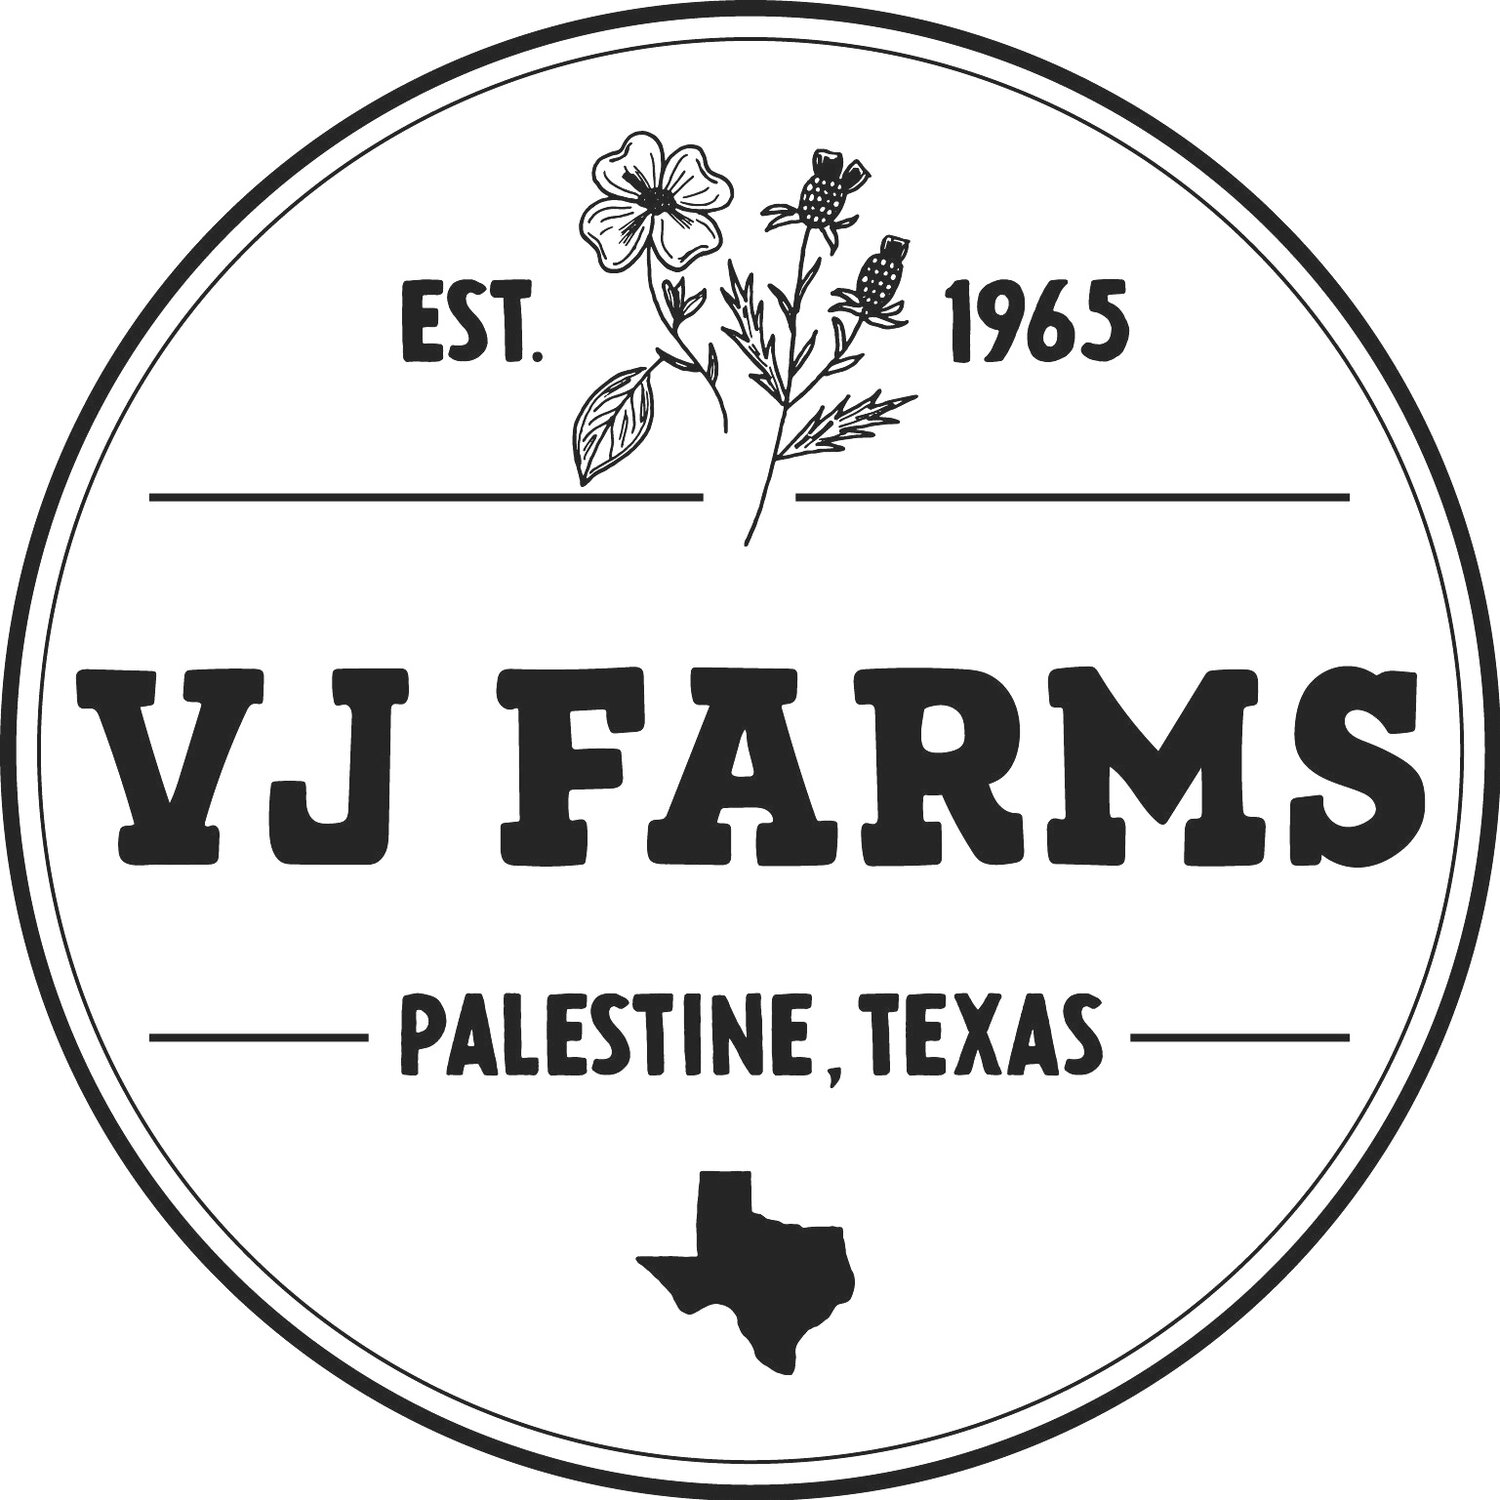 VJ Farms Texas